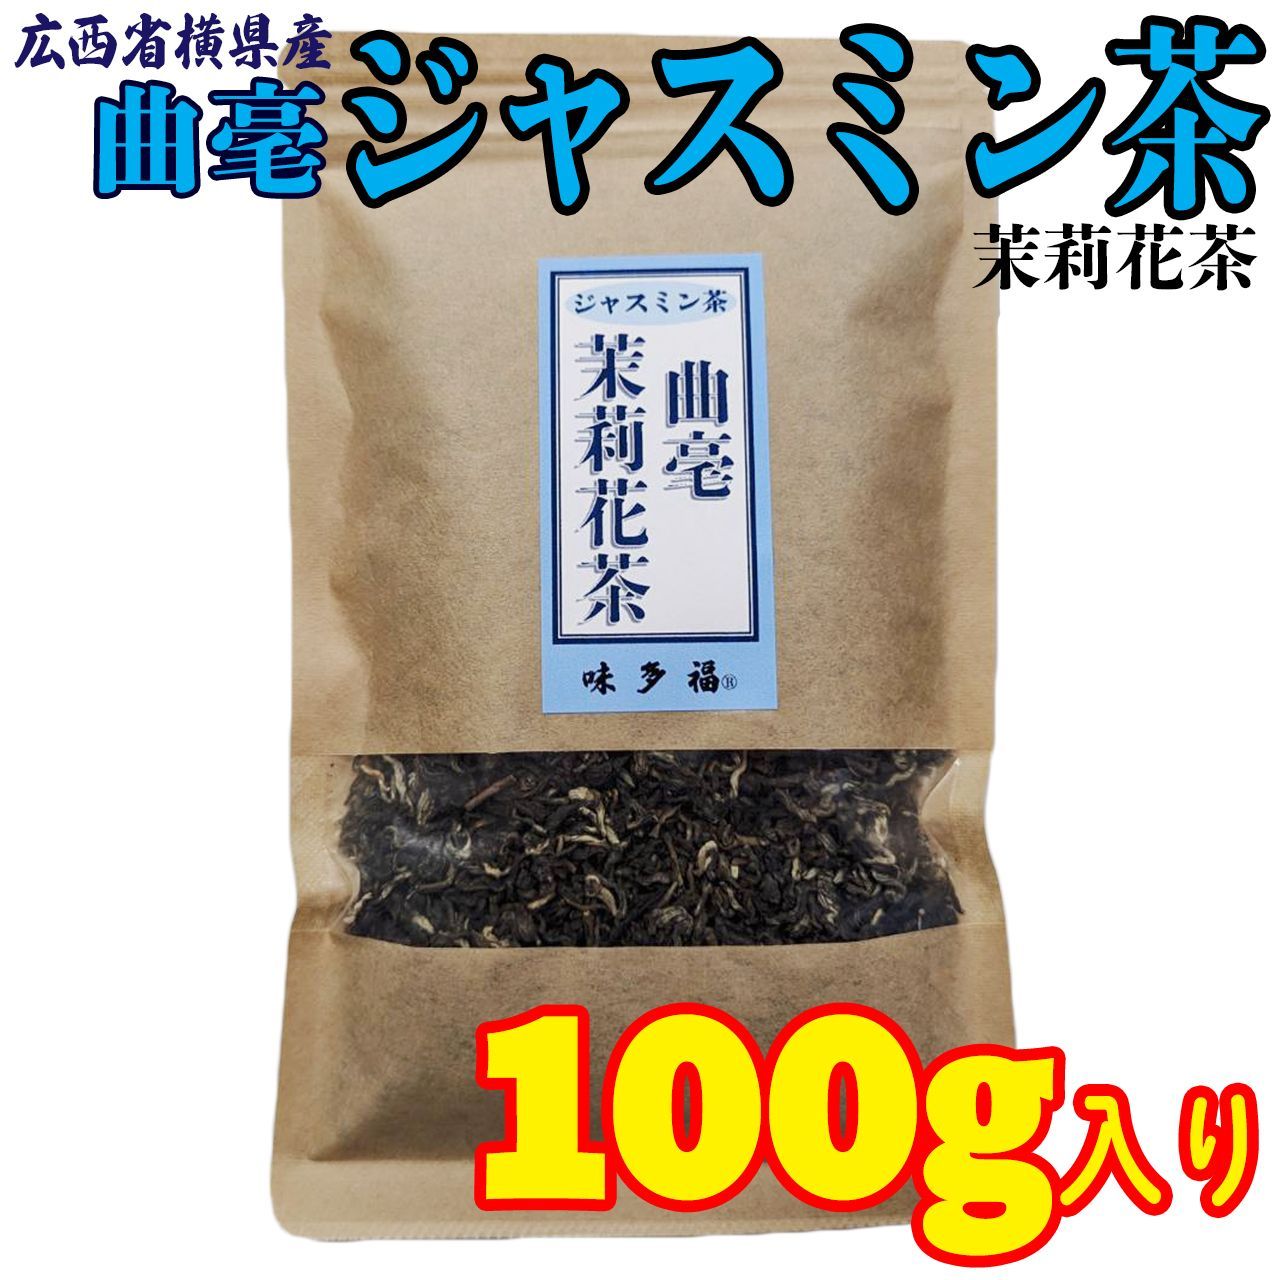 売買 味多福 特選 ジャスミン茶 100g入り×2袋セット 広西省横県産 茶葉